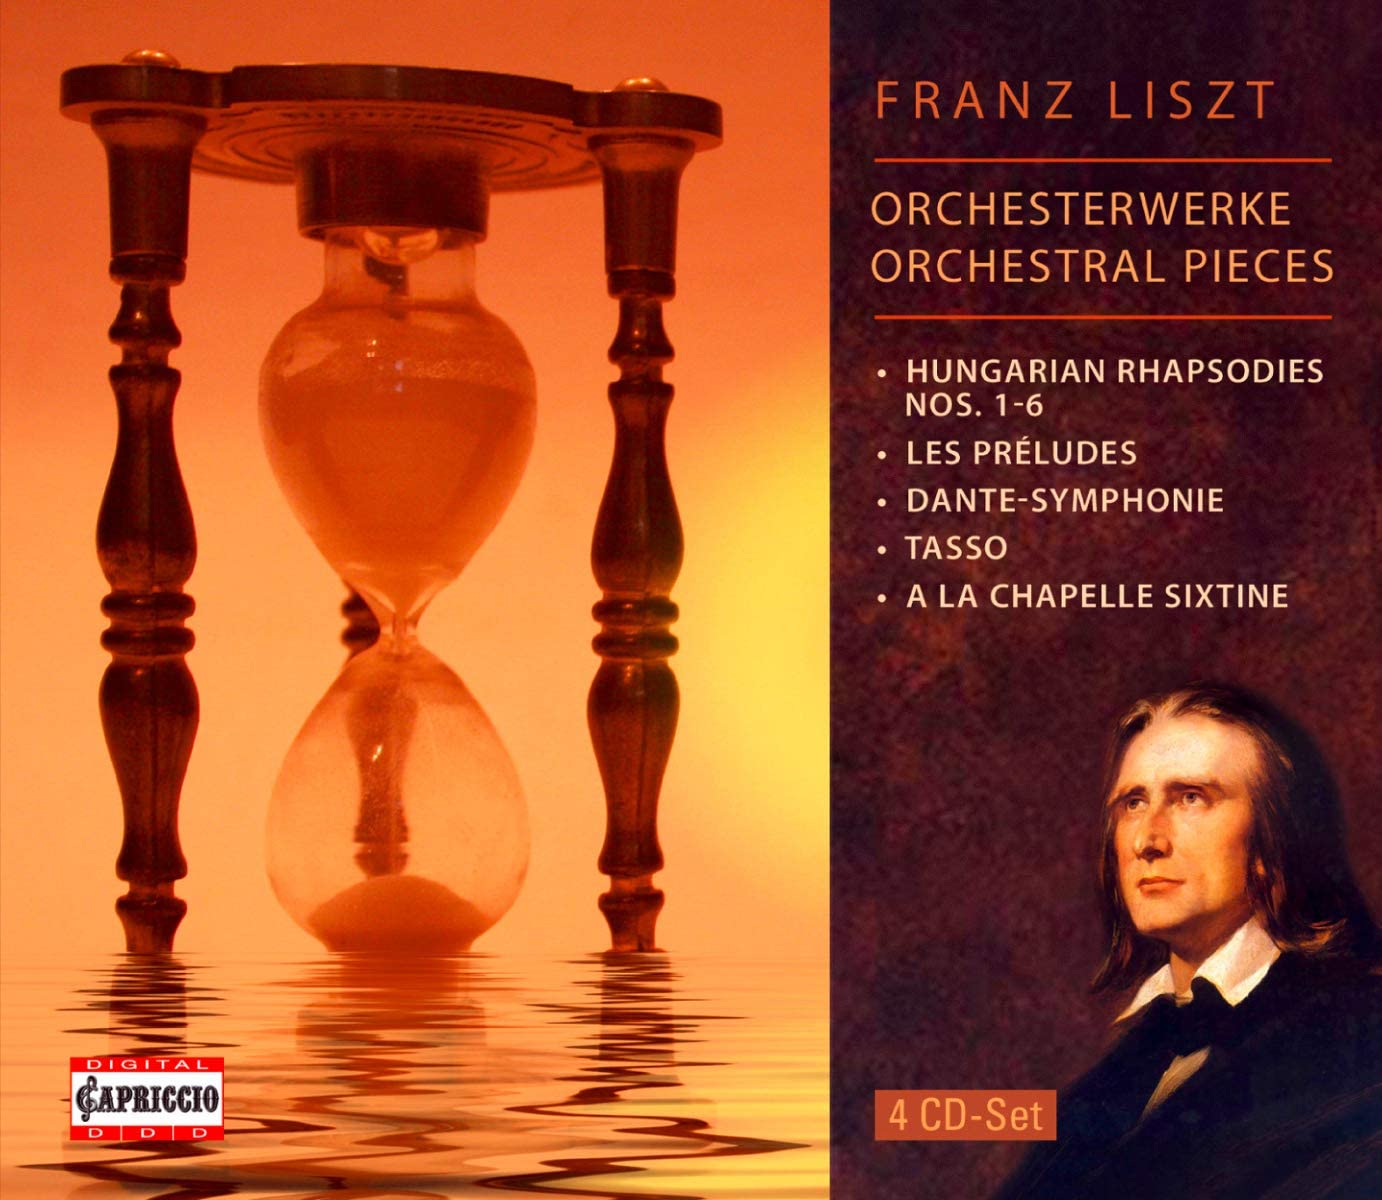 Liszt: Orchestral pieces